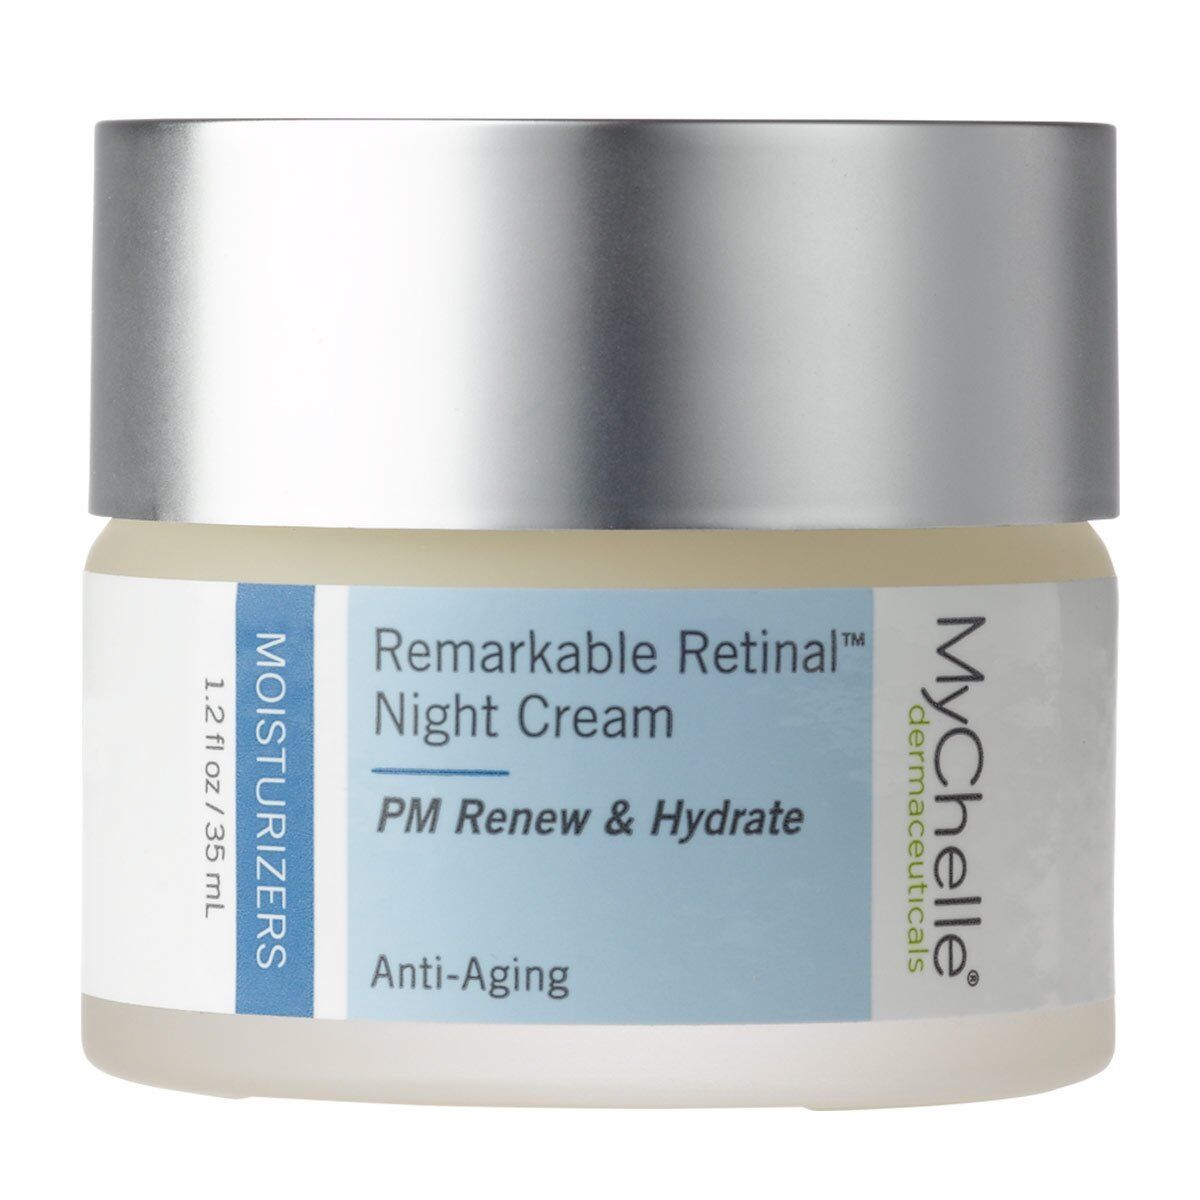 MyChelle Dermaceuticals - Remarkable Retinal Night Cream